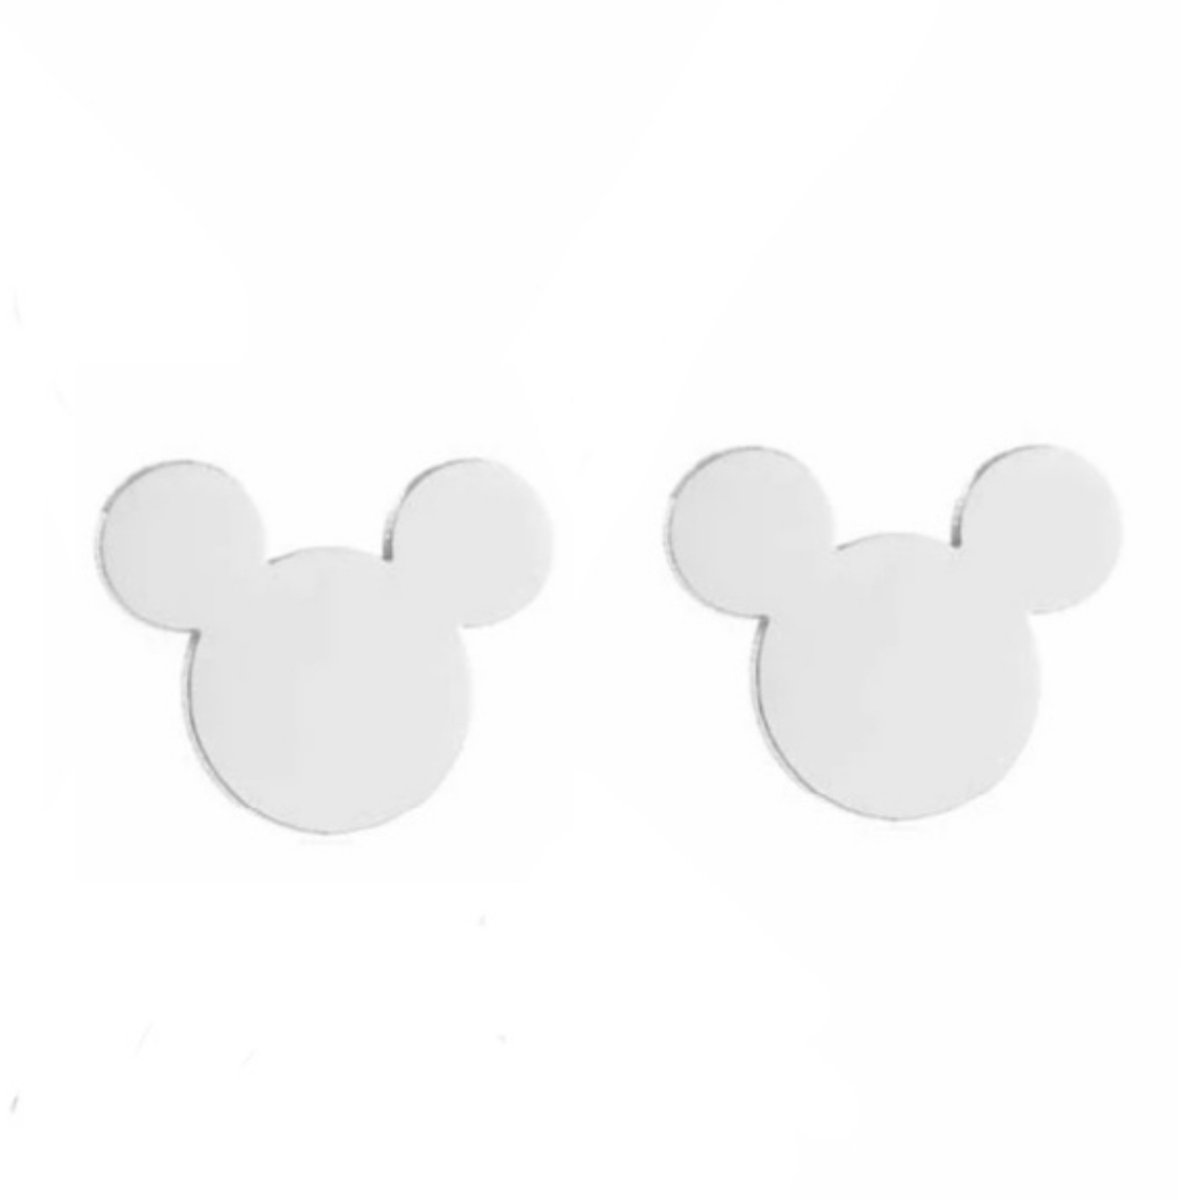 SALE - UITVERKOOP - AANBIEDING - Kinderoorbellen – Staal – Zilverkleurig – Mickey – Cadeau voor kind